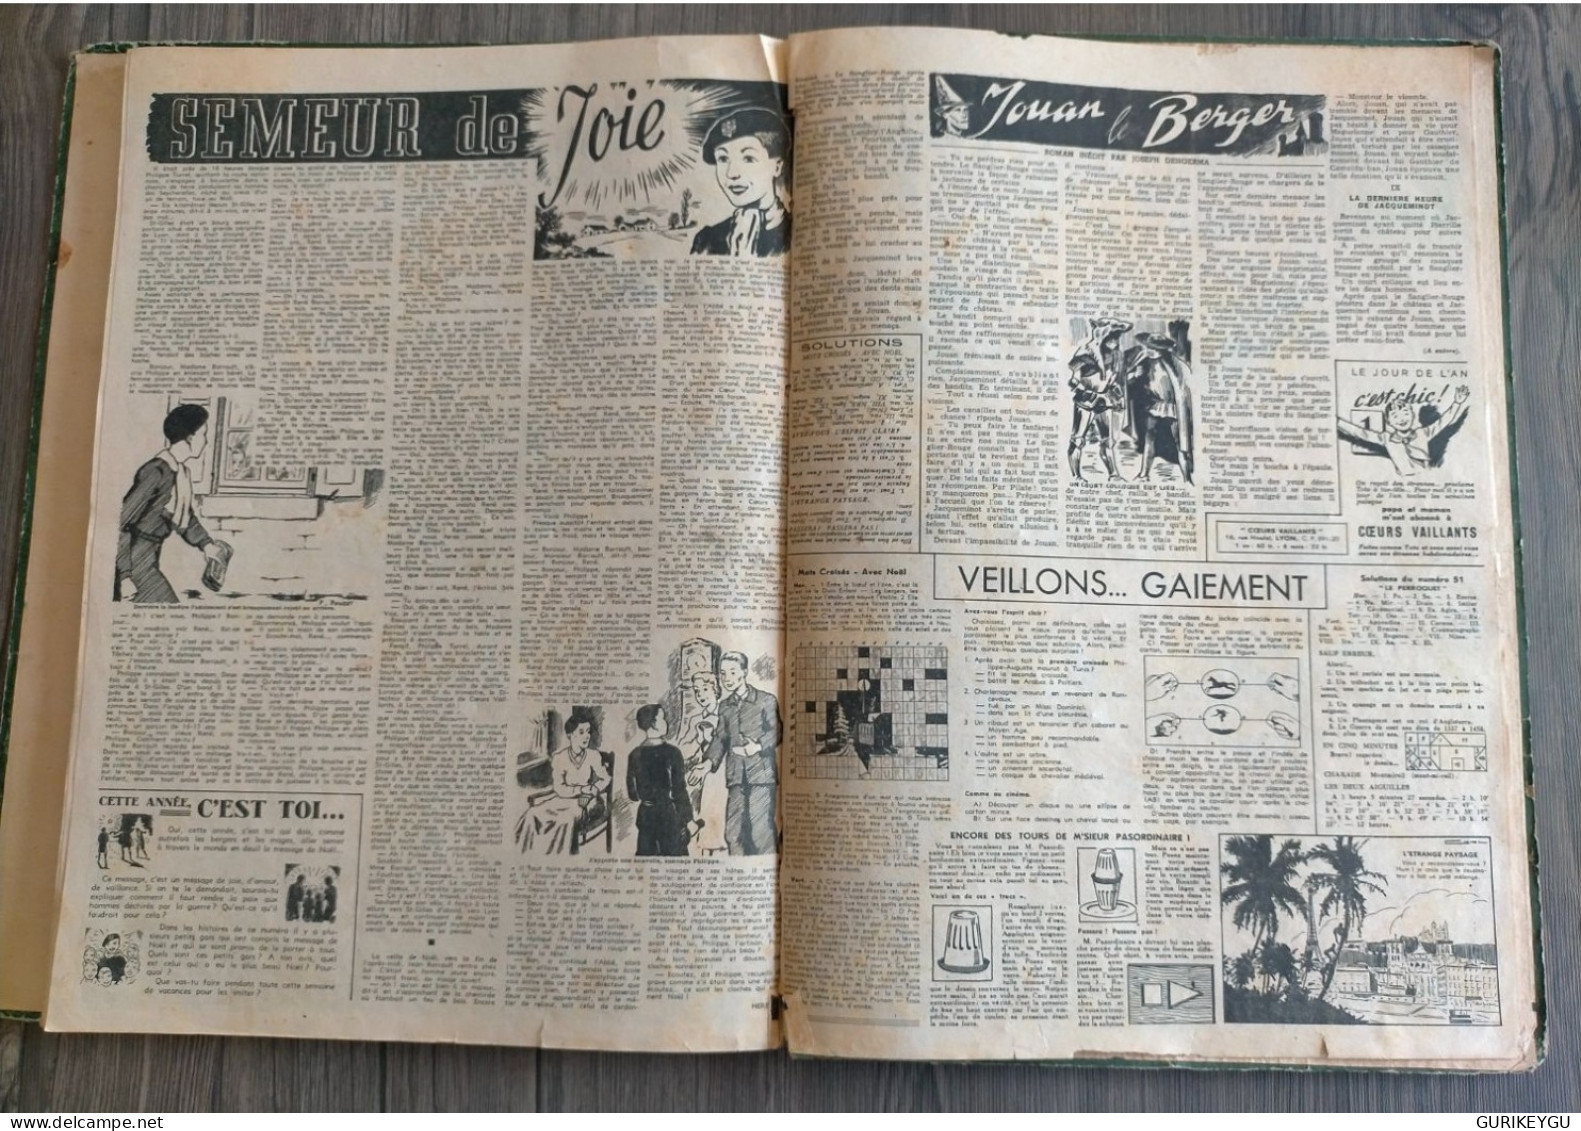 rarissime TINTIN 1942 le crabe au pince d'or reliure album COEURS VAILLANTS 2 ème semestre HERGE cote BDM 350€